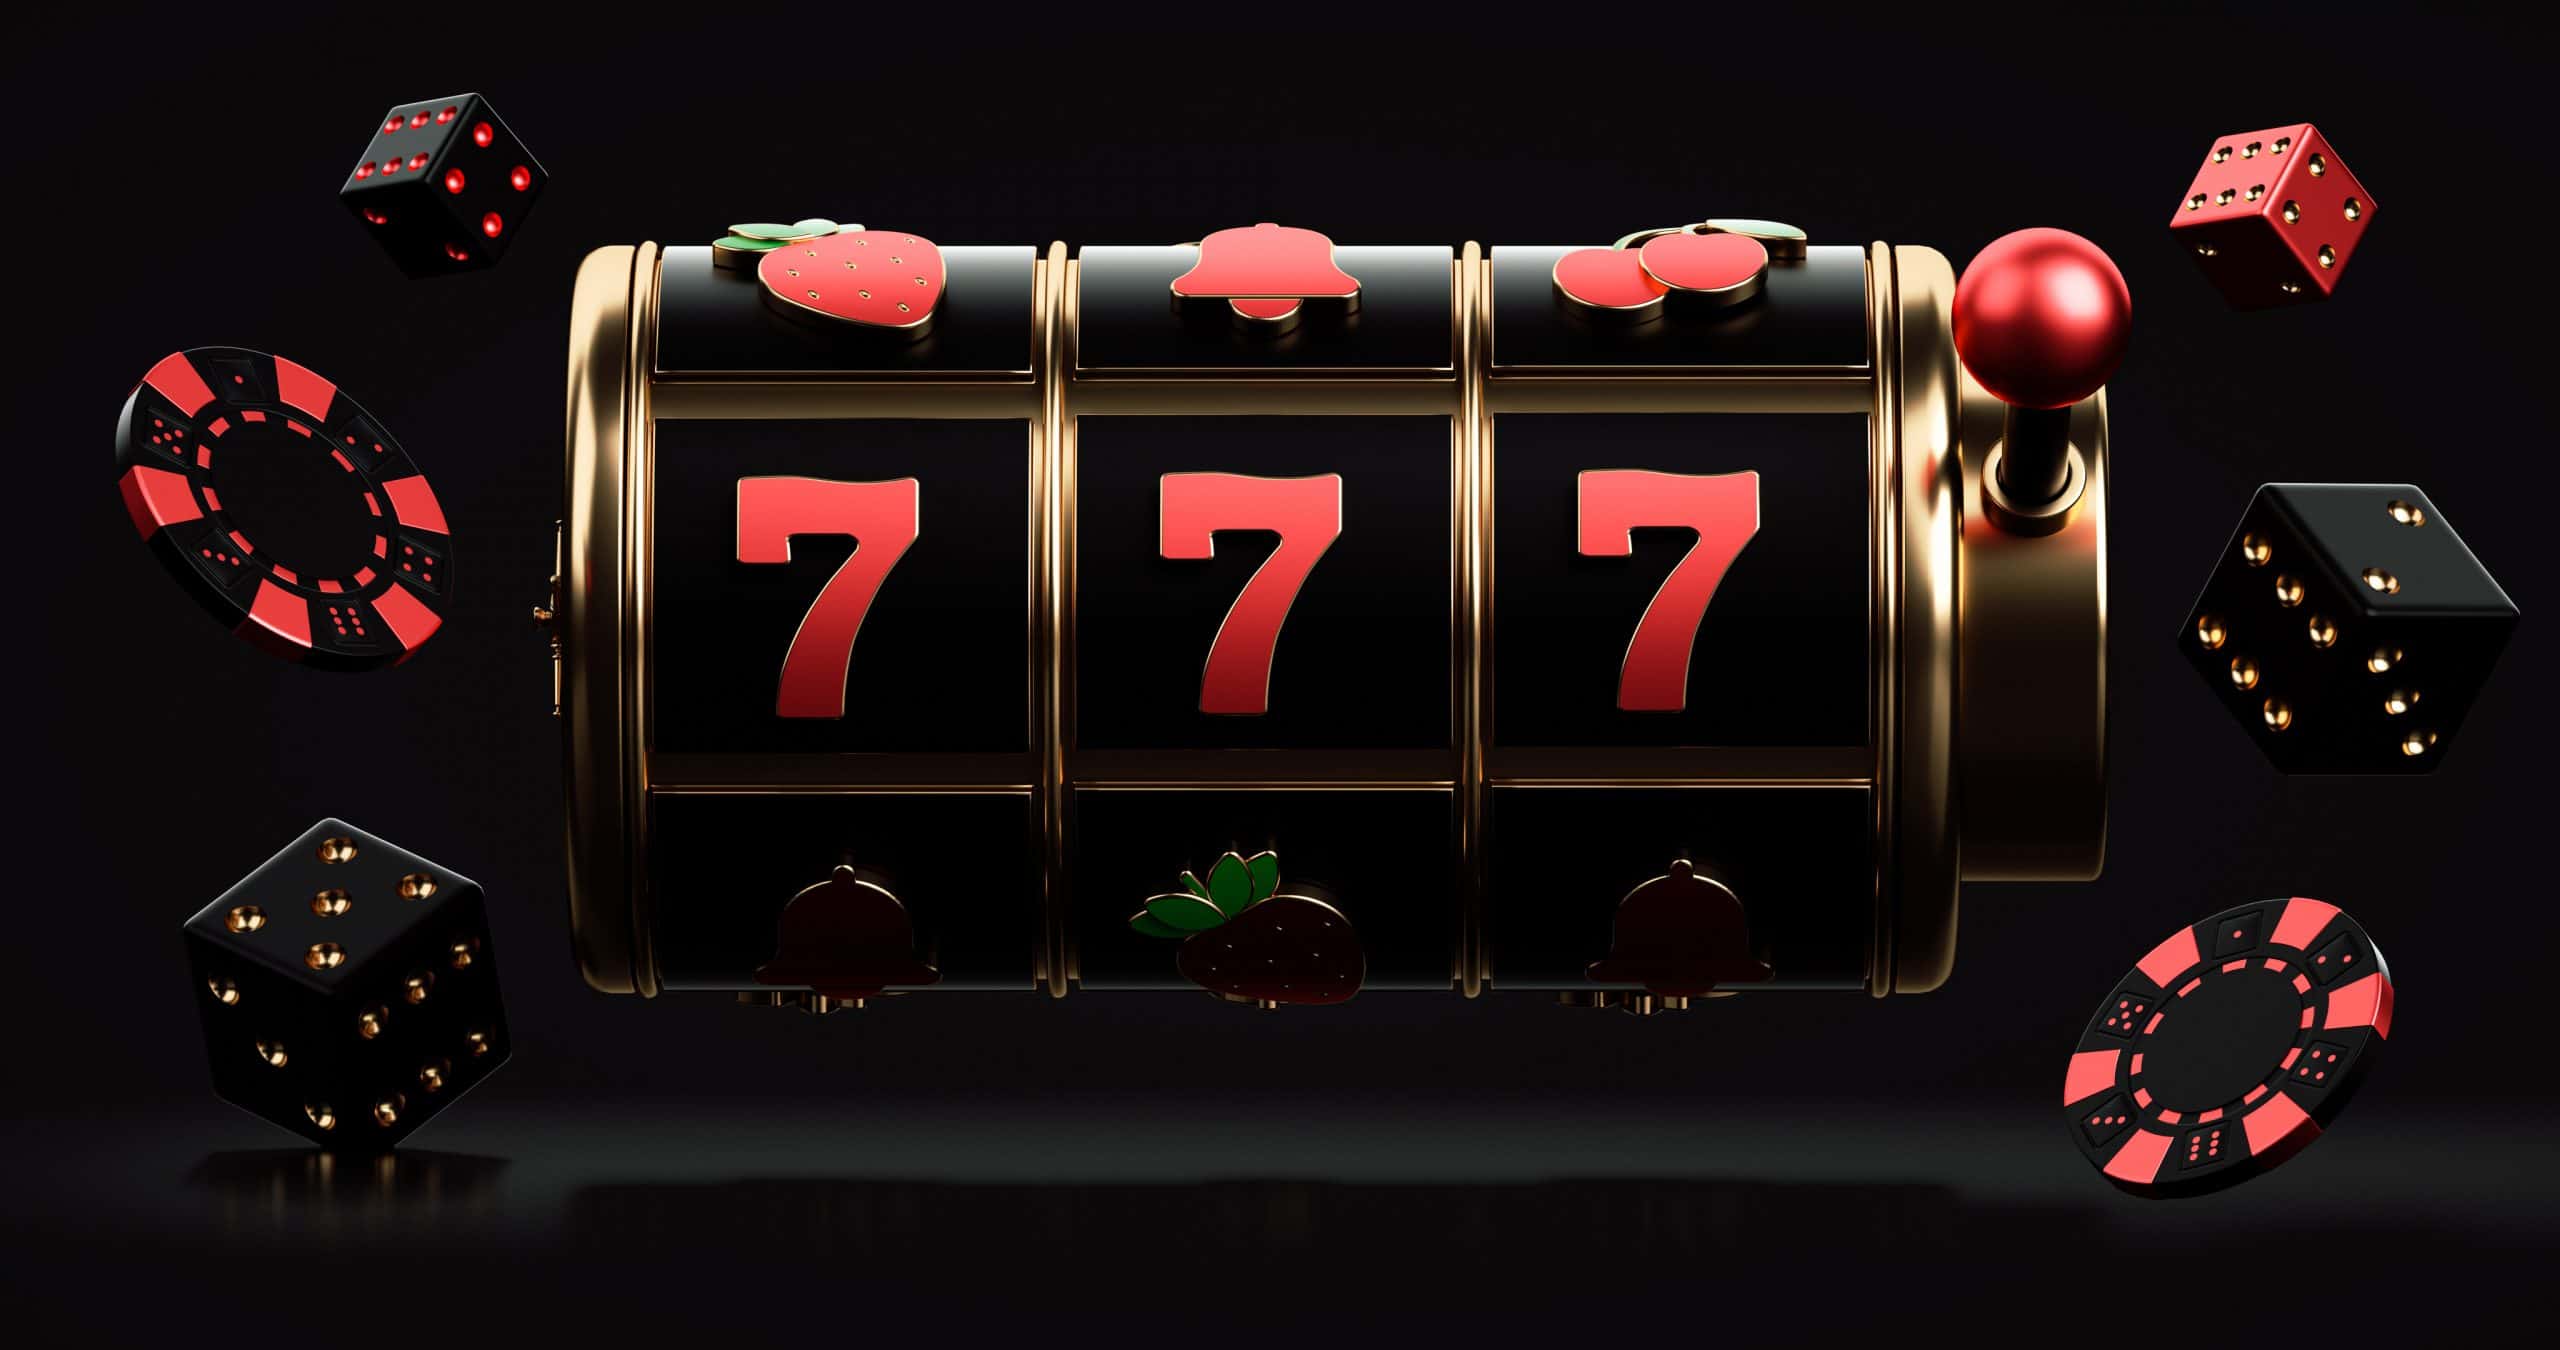 Casino igre, najpopularnijih 10 slot igara u 2022.